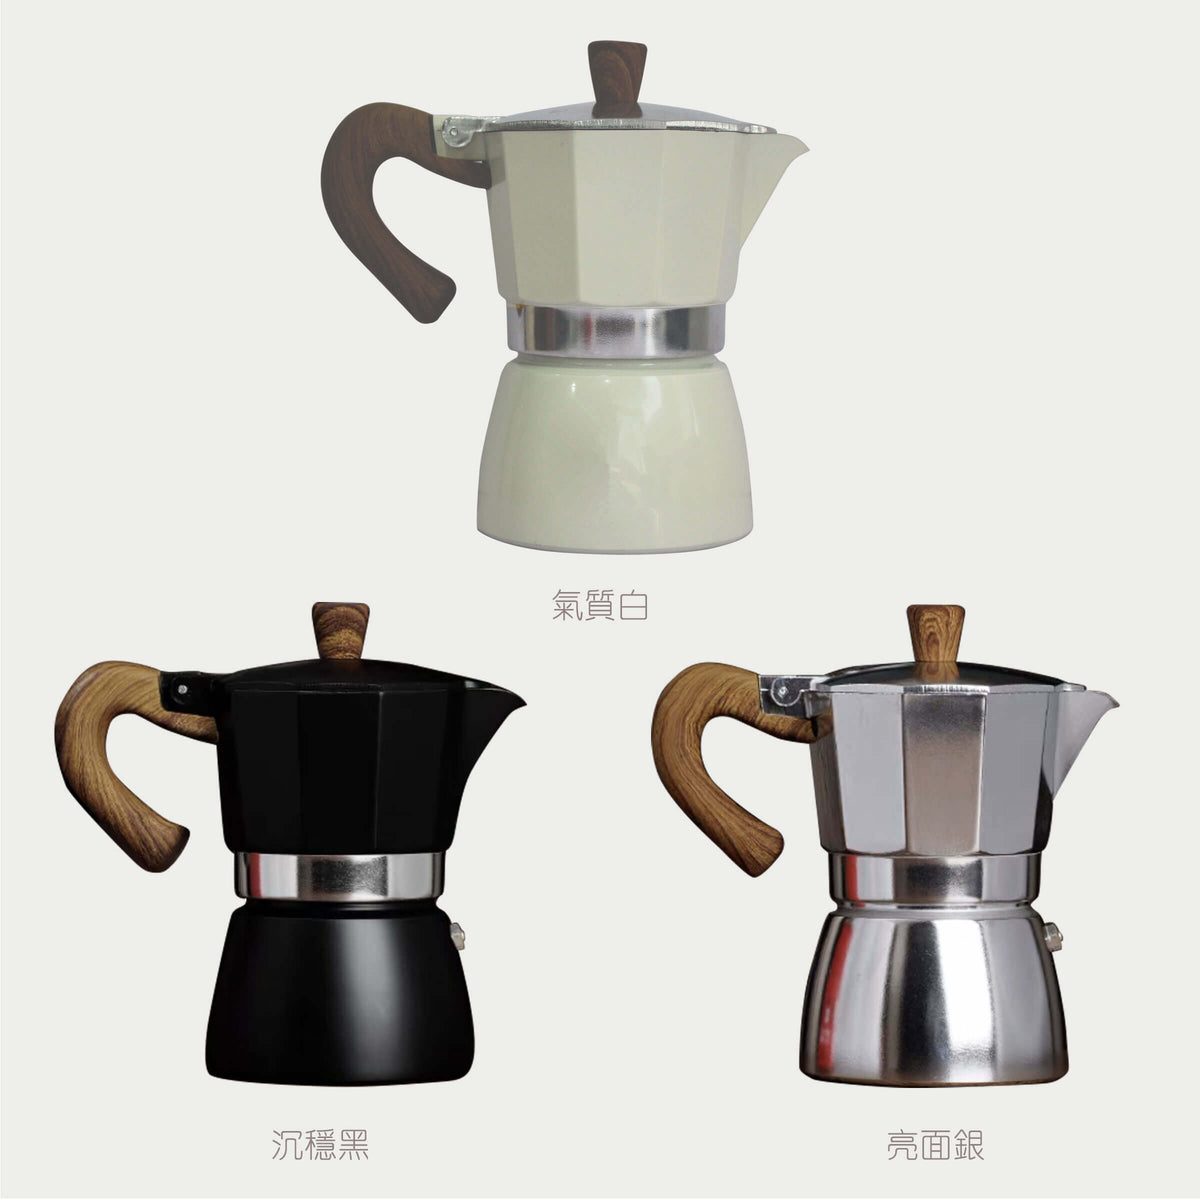 【Coffee Shop系列】意式咖啡壺 手沖咖啡壺 咖啡機 咖啡店訂製產品